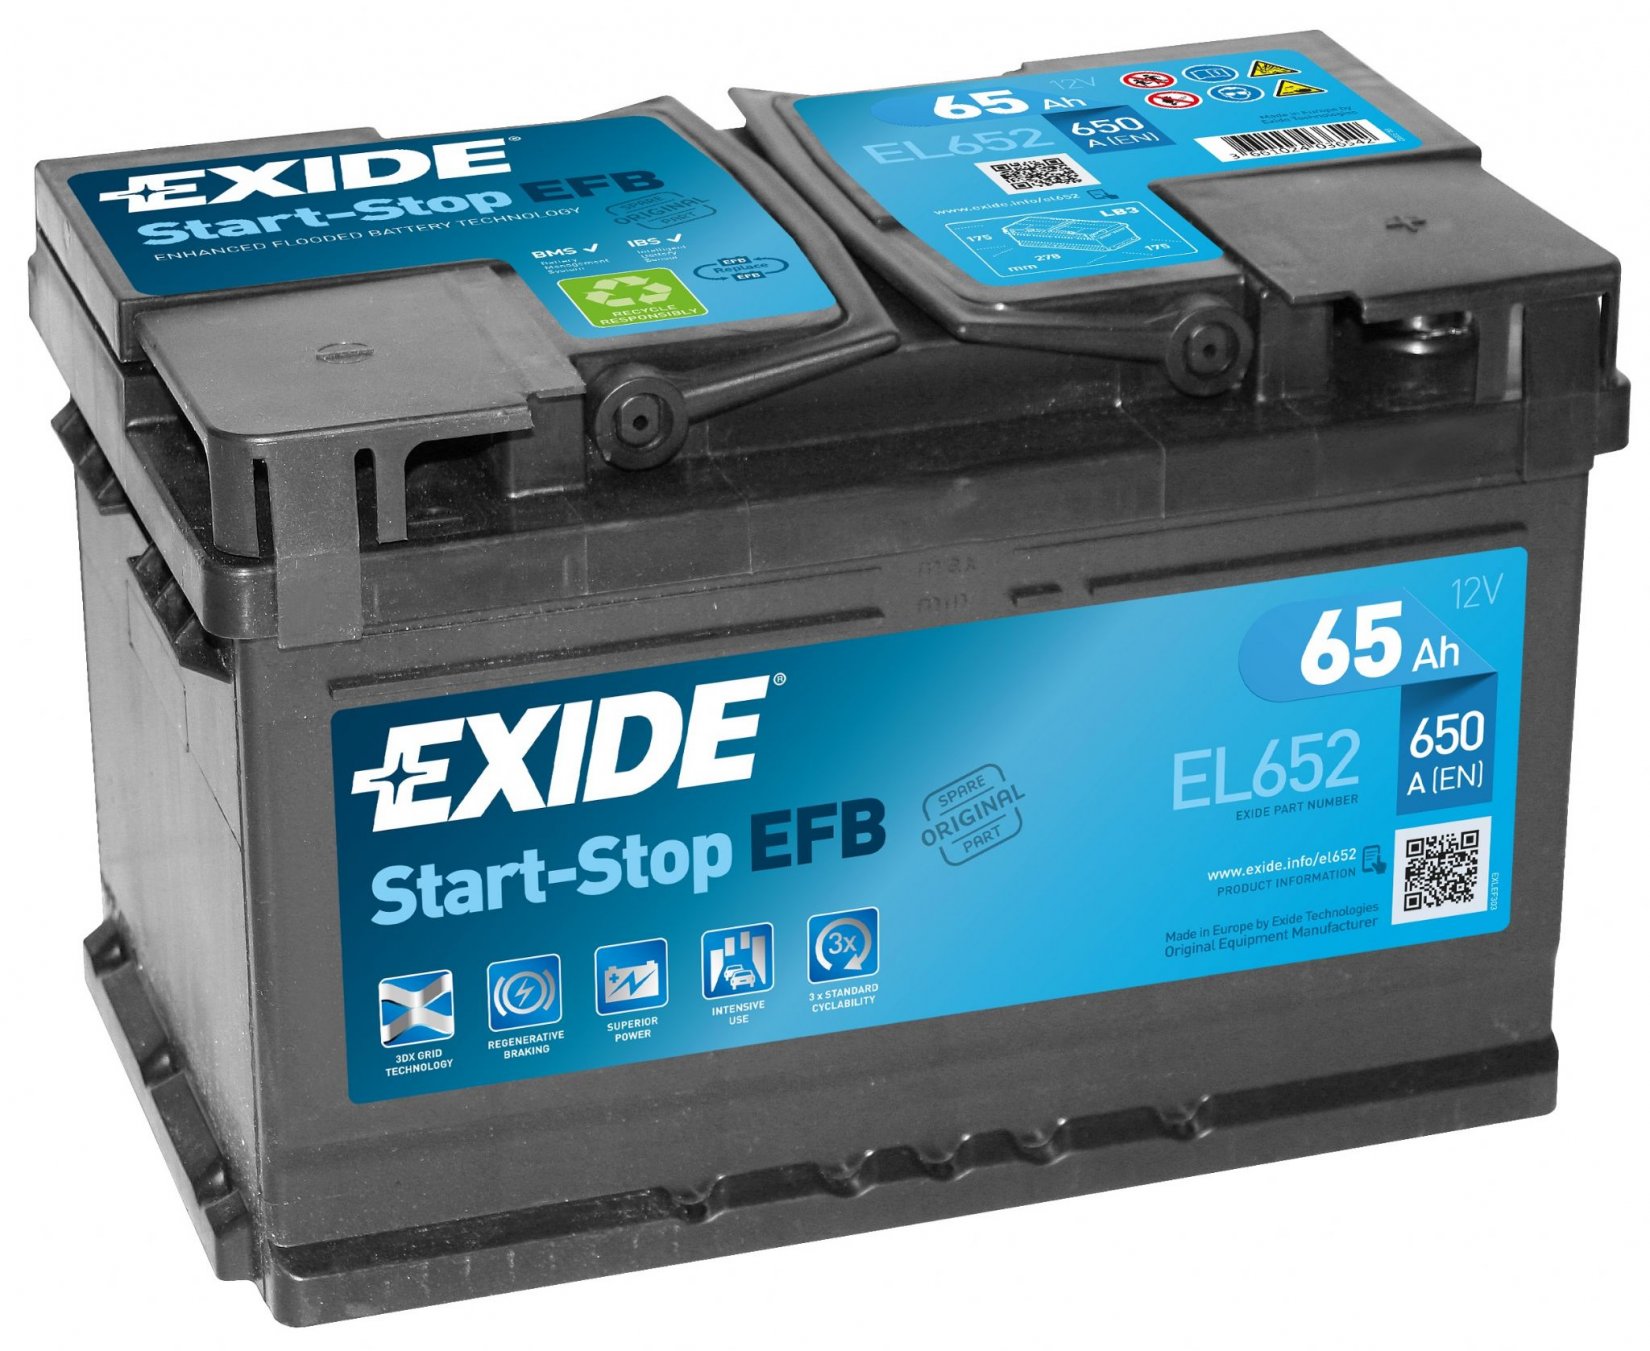 Autobaterie EXIDE START-STOP EFB 65Ah 12V 650A